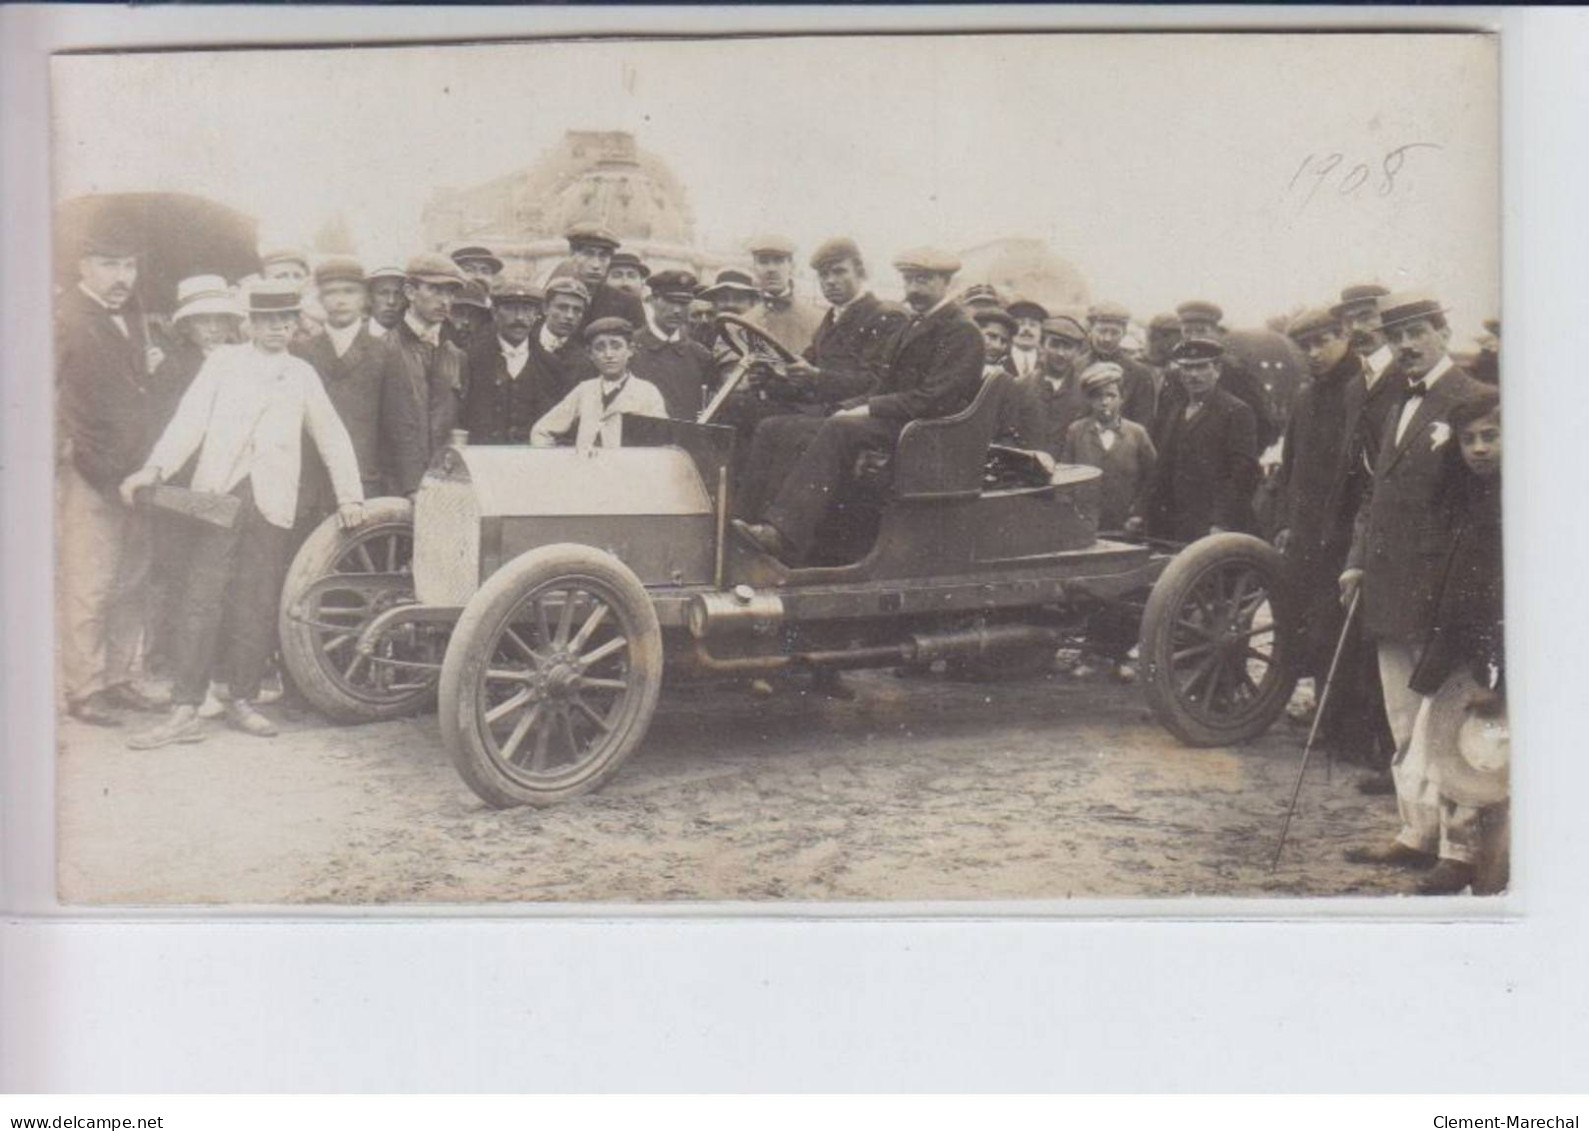 ROYAN: course automobile 1908, 13CPA - très bon état